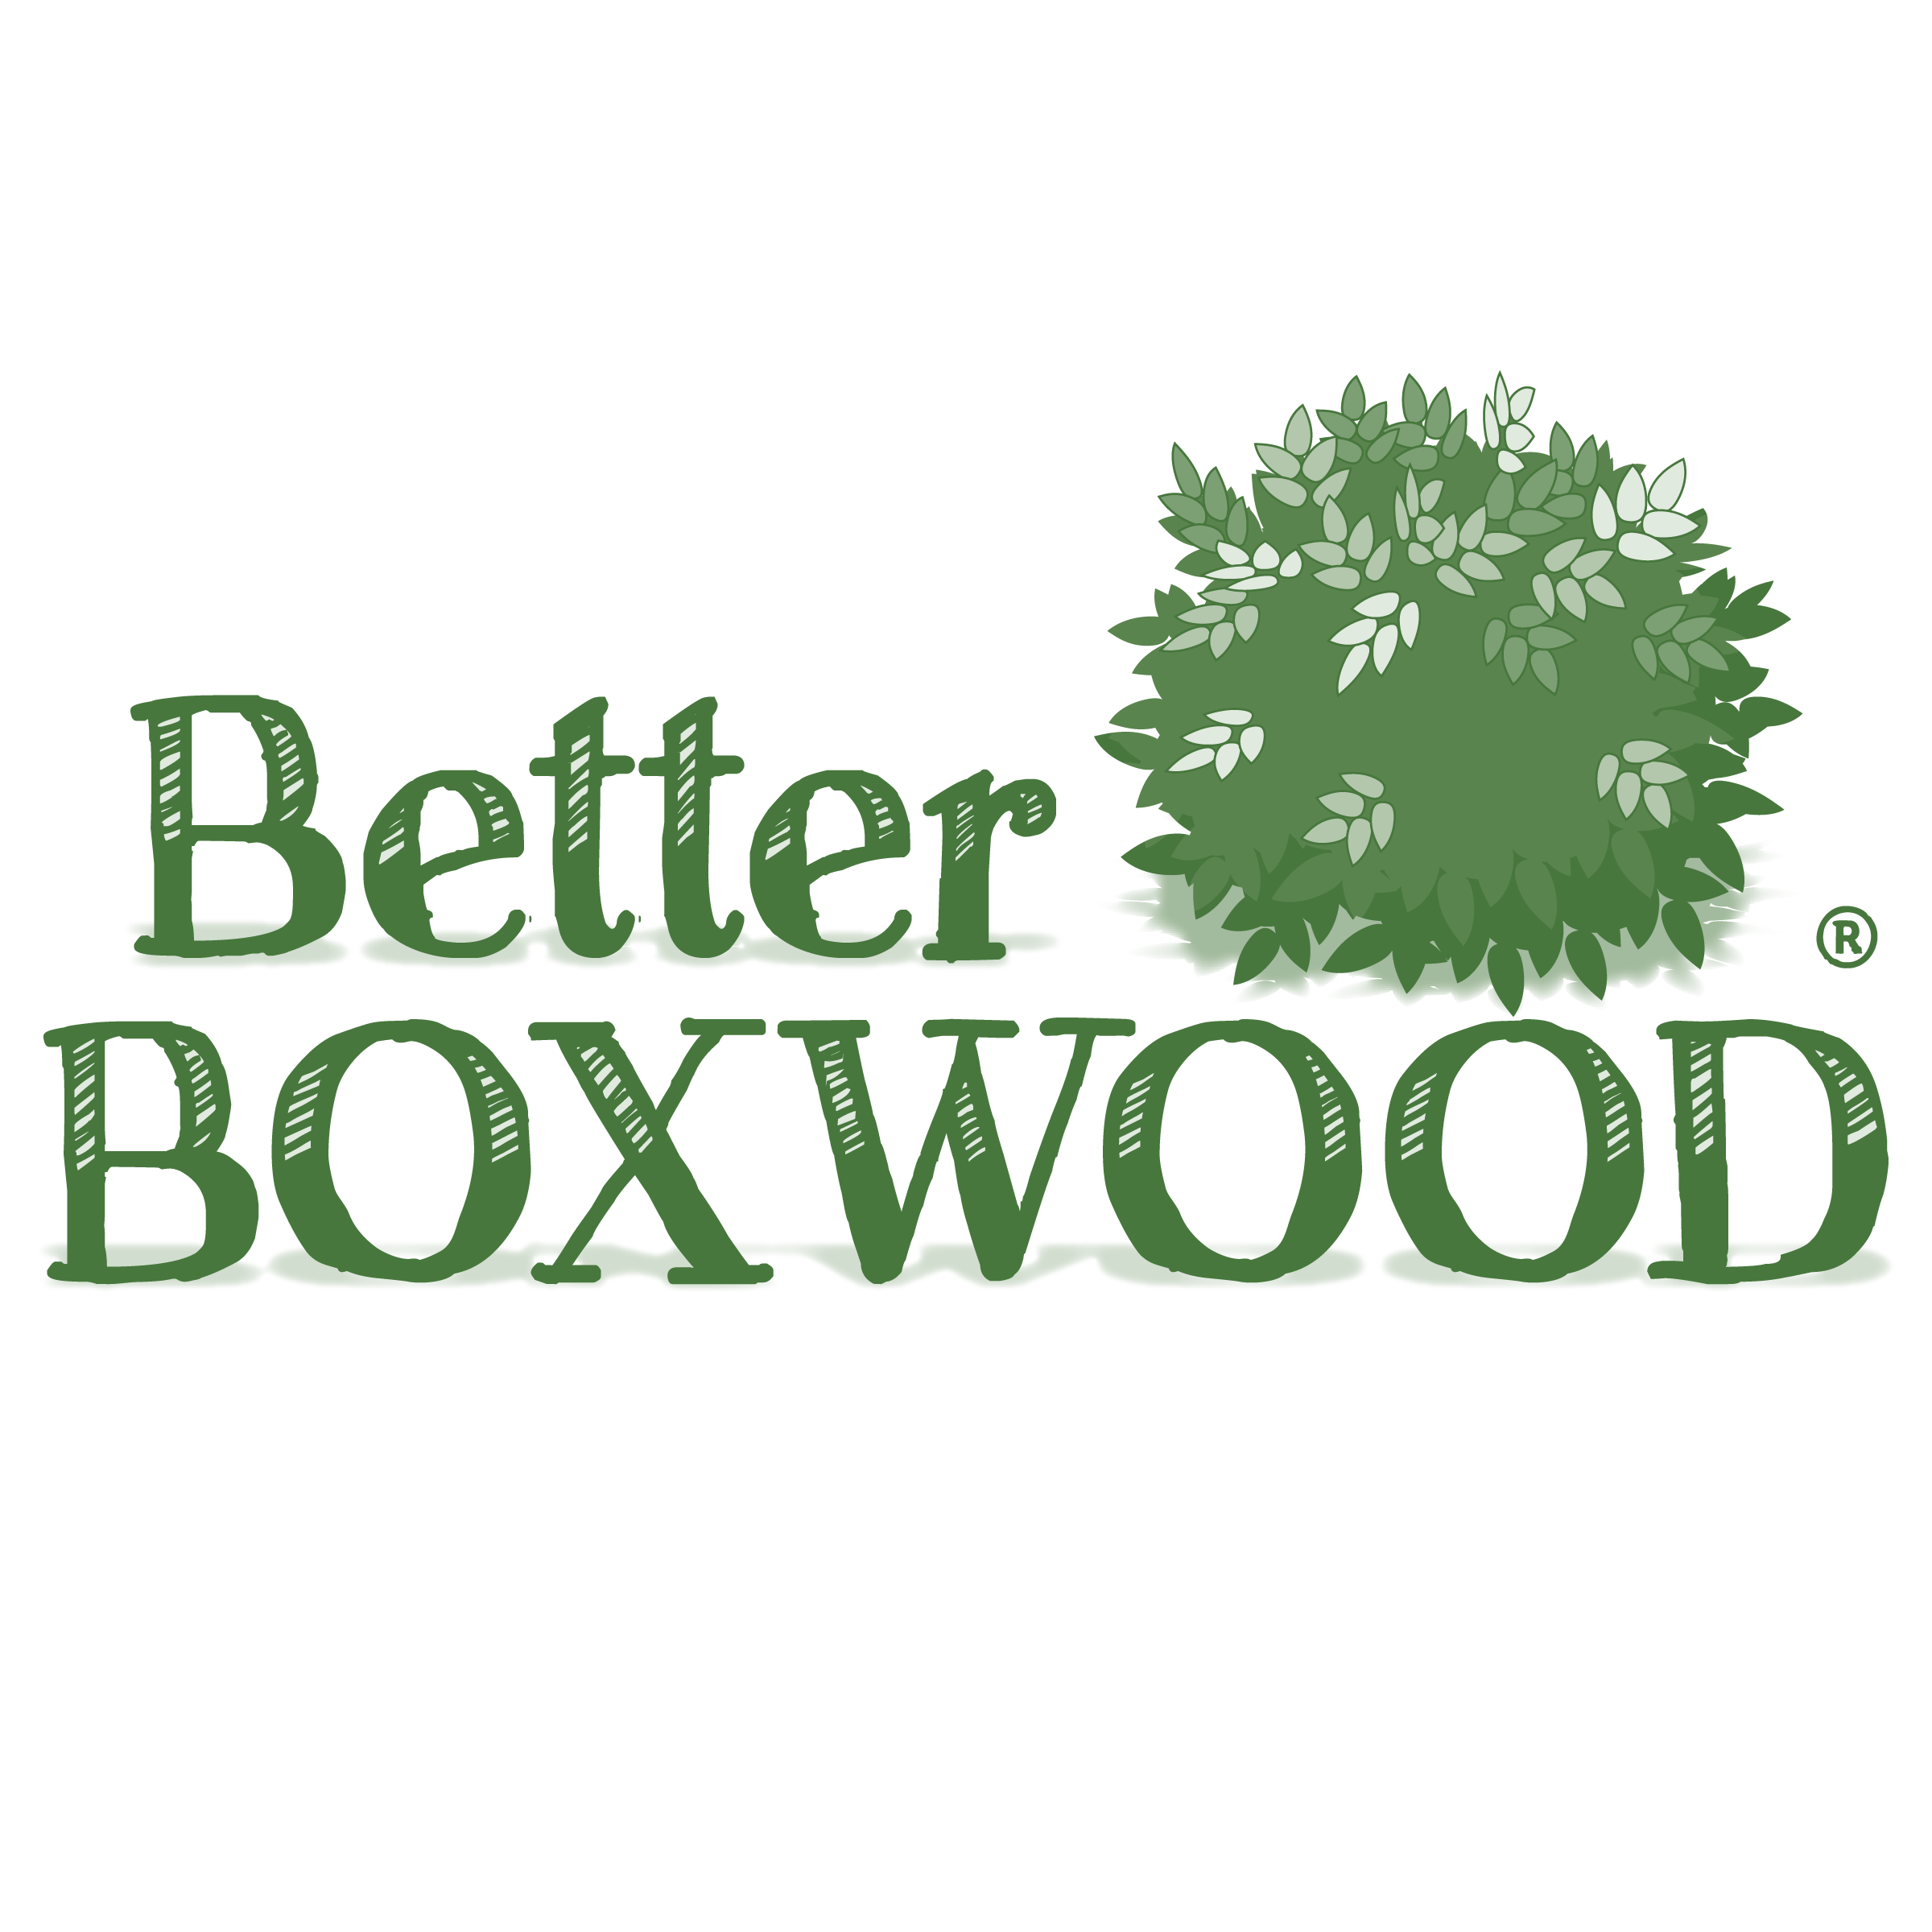 logo-buxus-better-boxwood-skylight-her2009b03-pp32-275